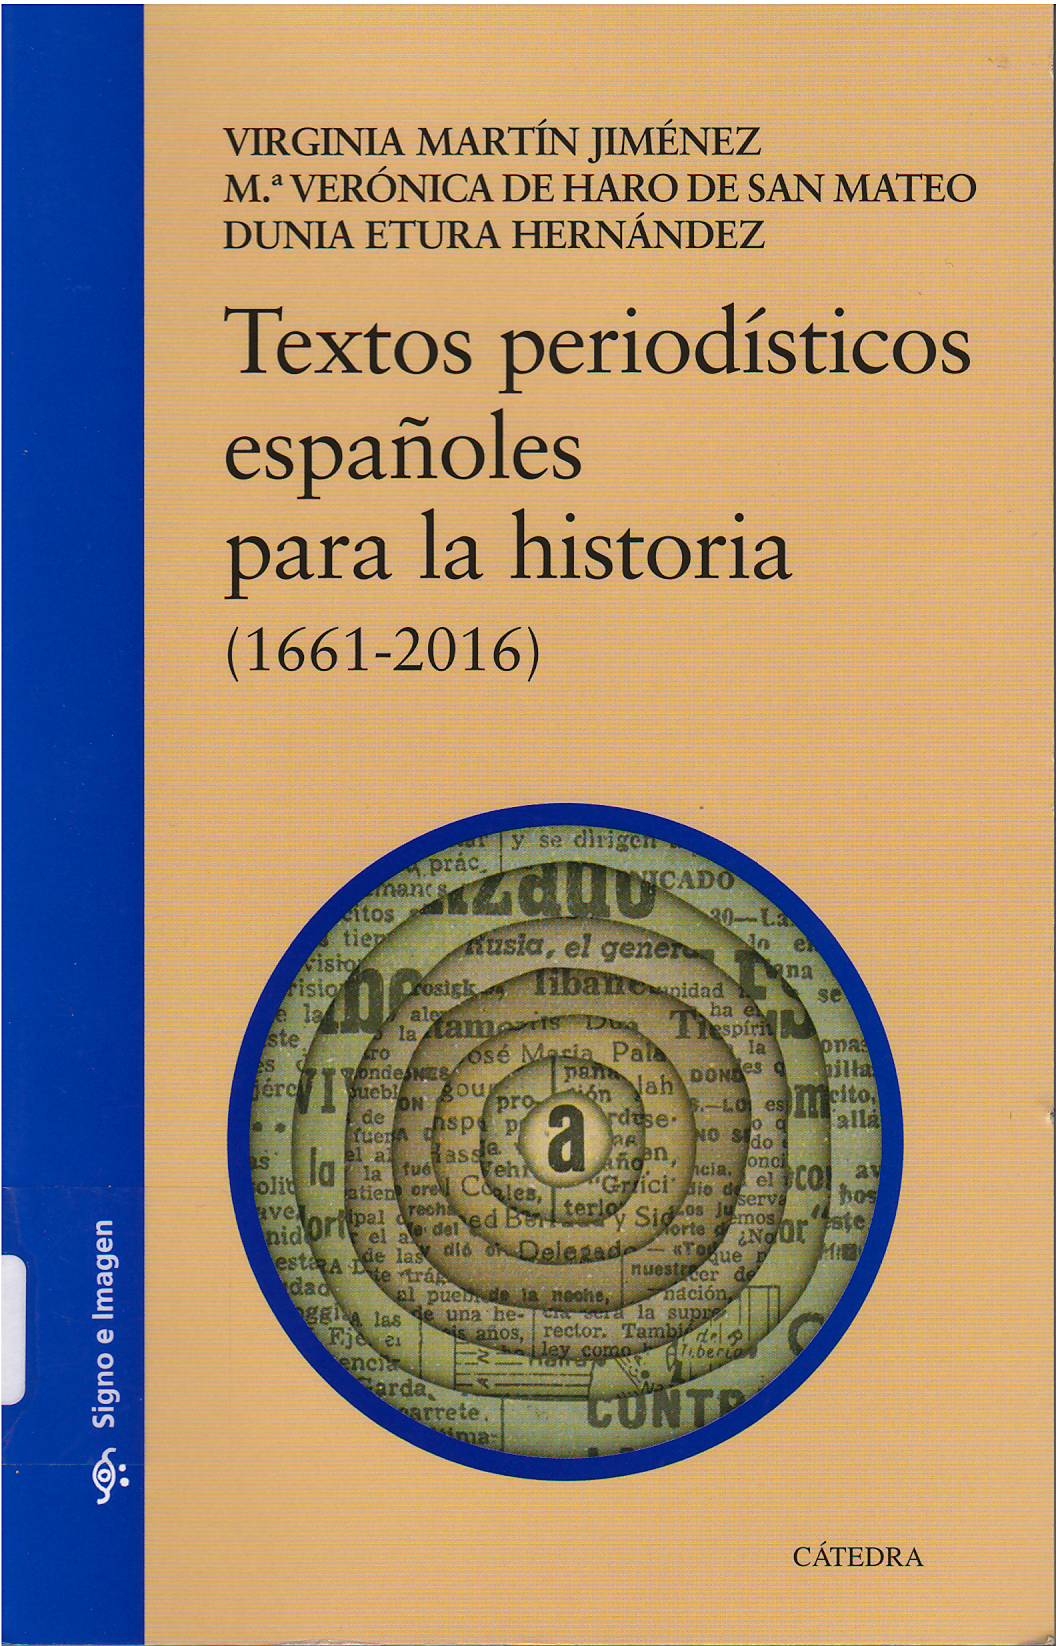 Imagen de portada del libro Textos periodísticos españoles para la Historia (1661-2016)